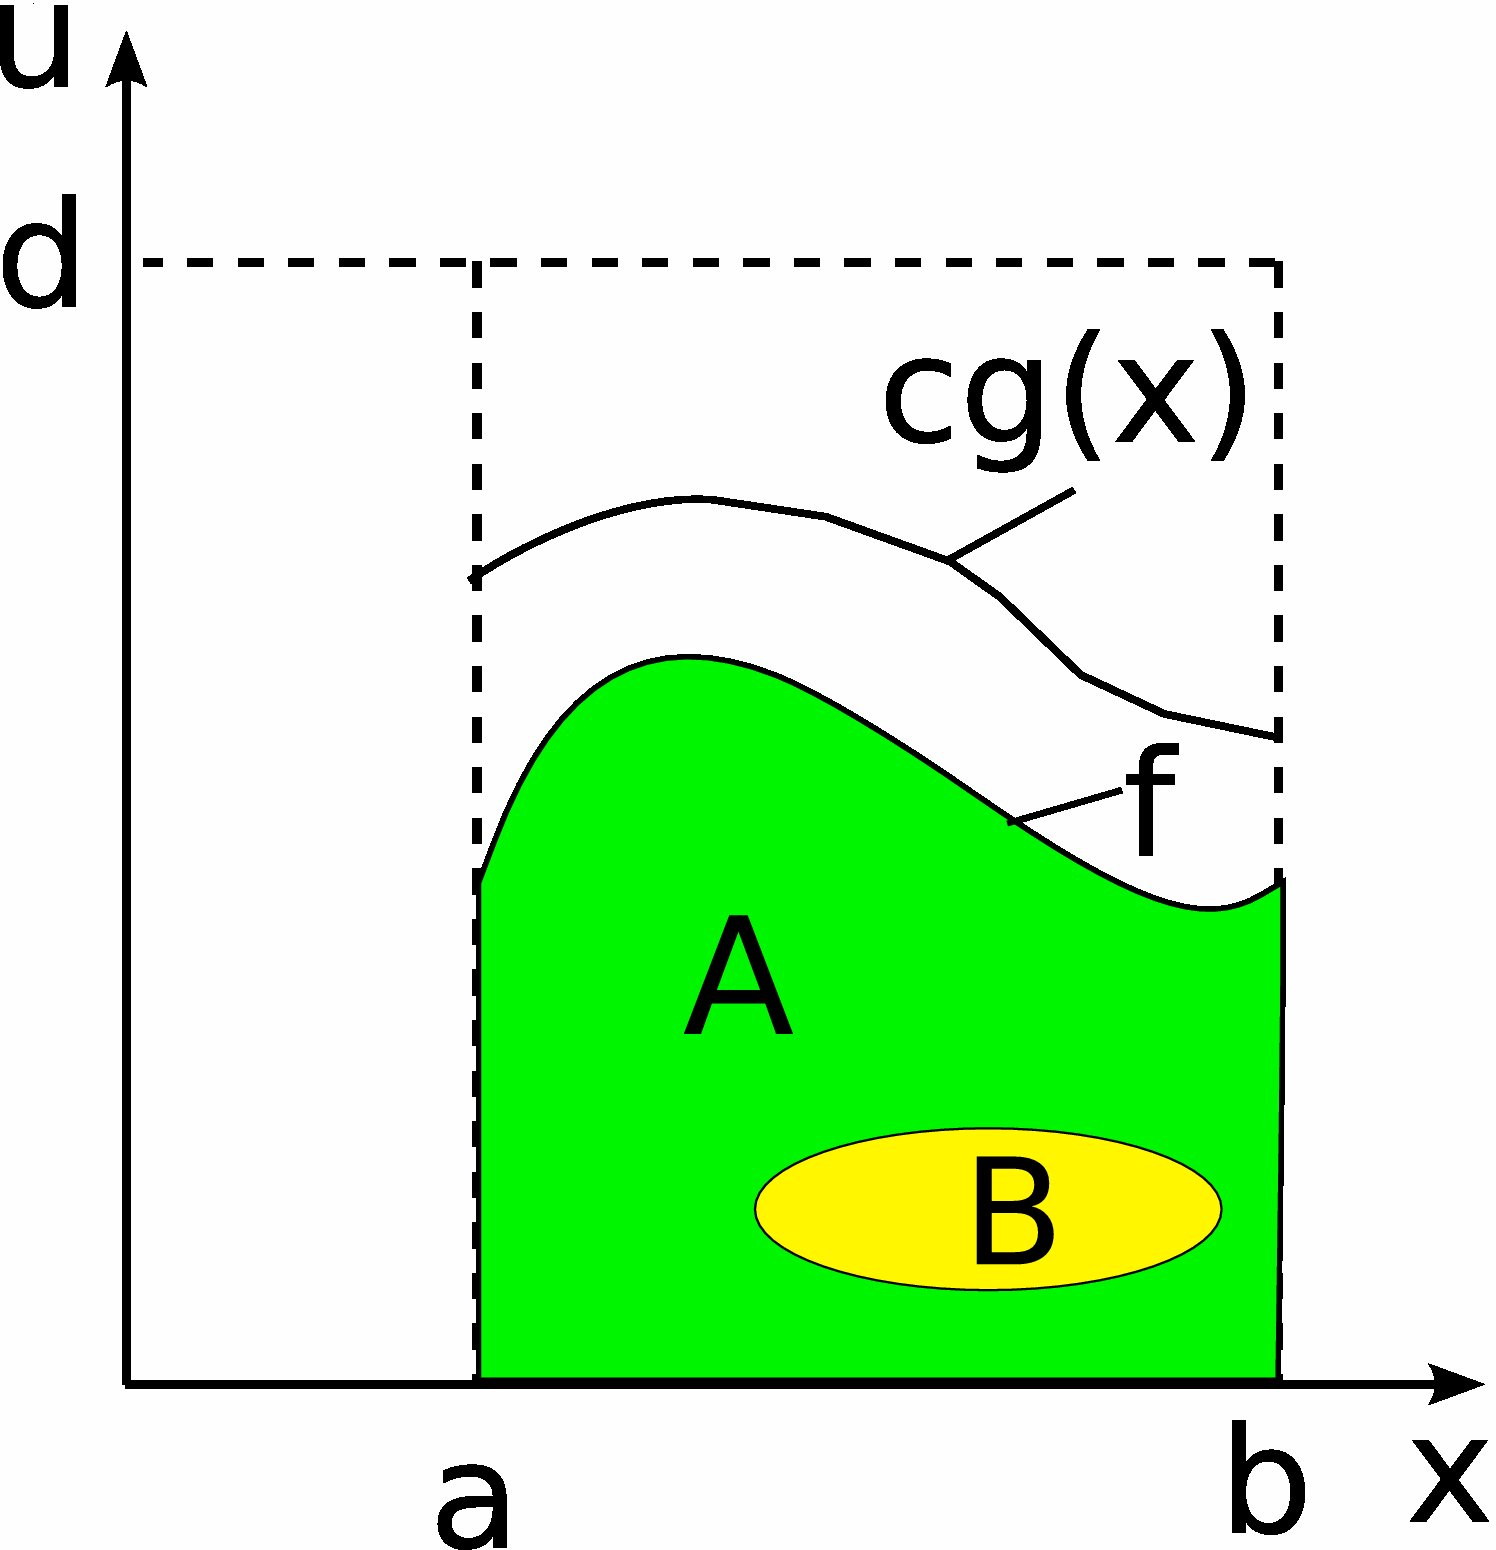 Metoda eliminacji (von Neumann) Chcemy wygenerować ciąg zmiennych losowych o gęstości prawdopodobieństwa f w przedziale [a,b]. Wartość f jest w przedziale [a,b] ograniczona od góry przez stałą d.